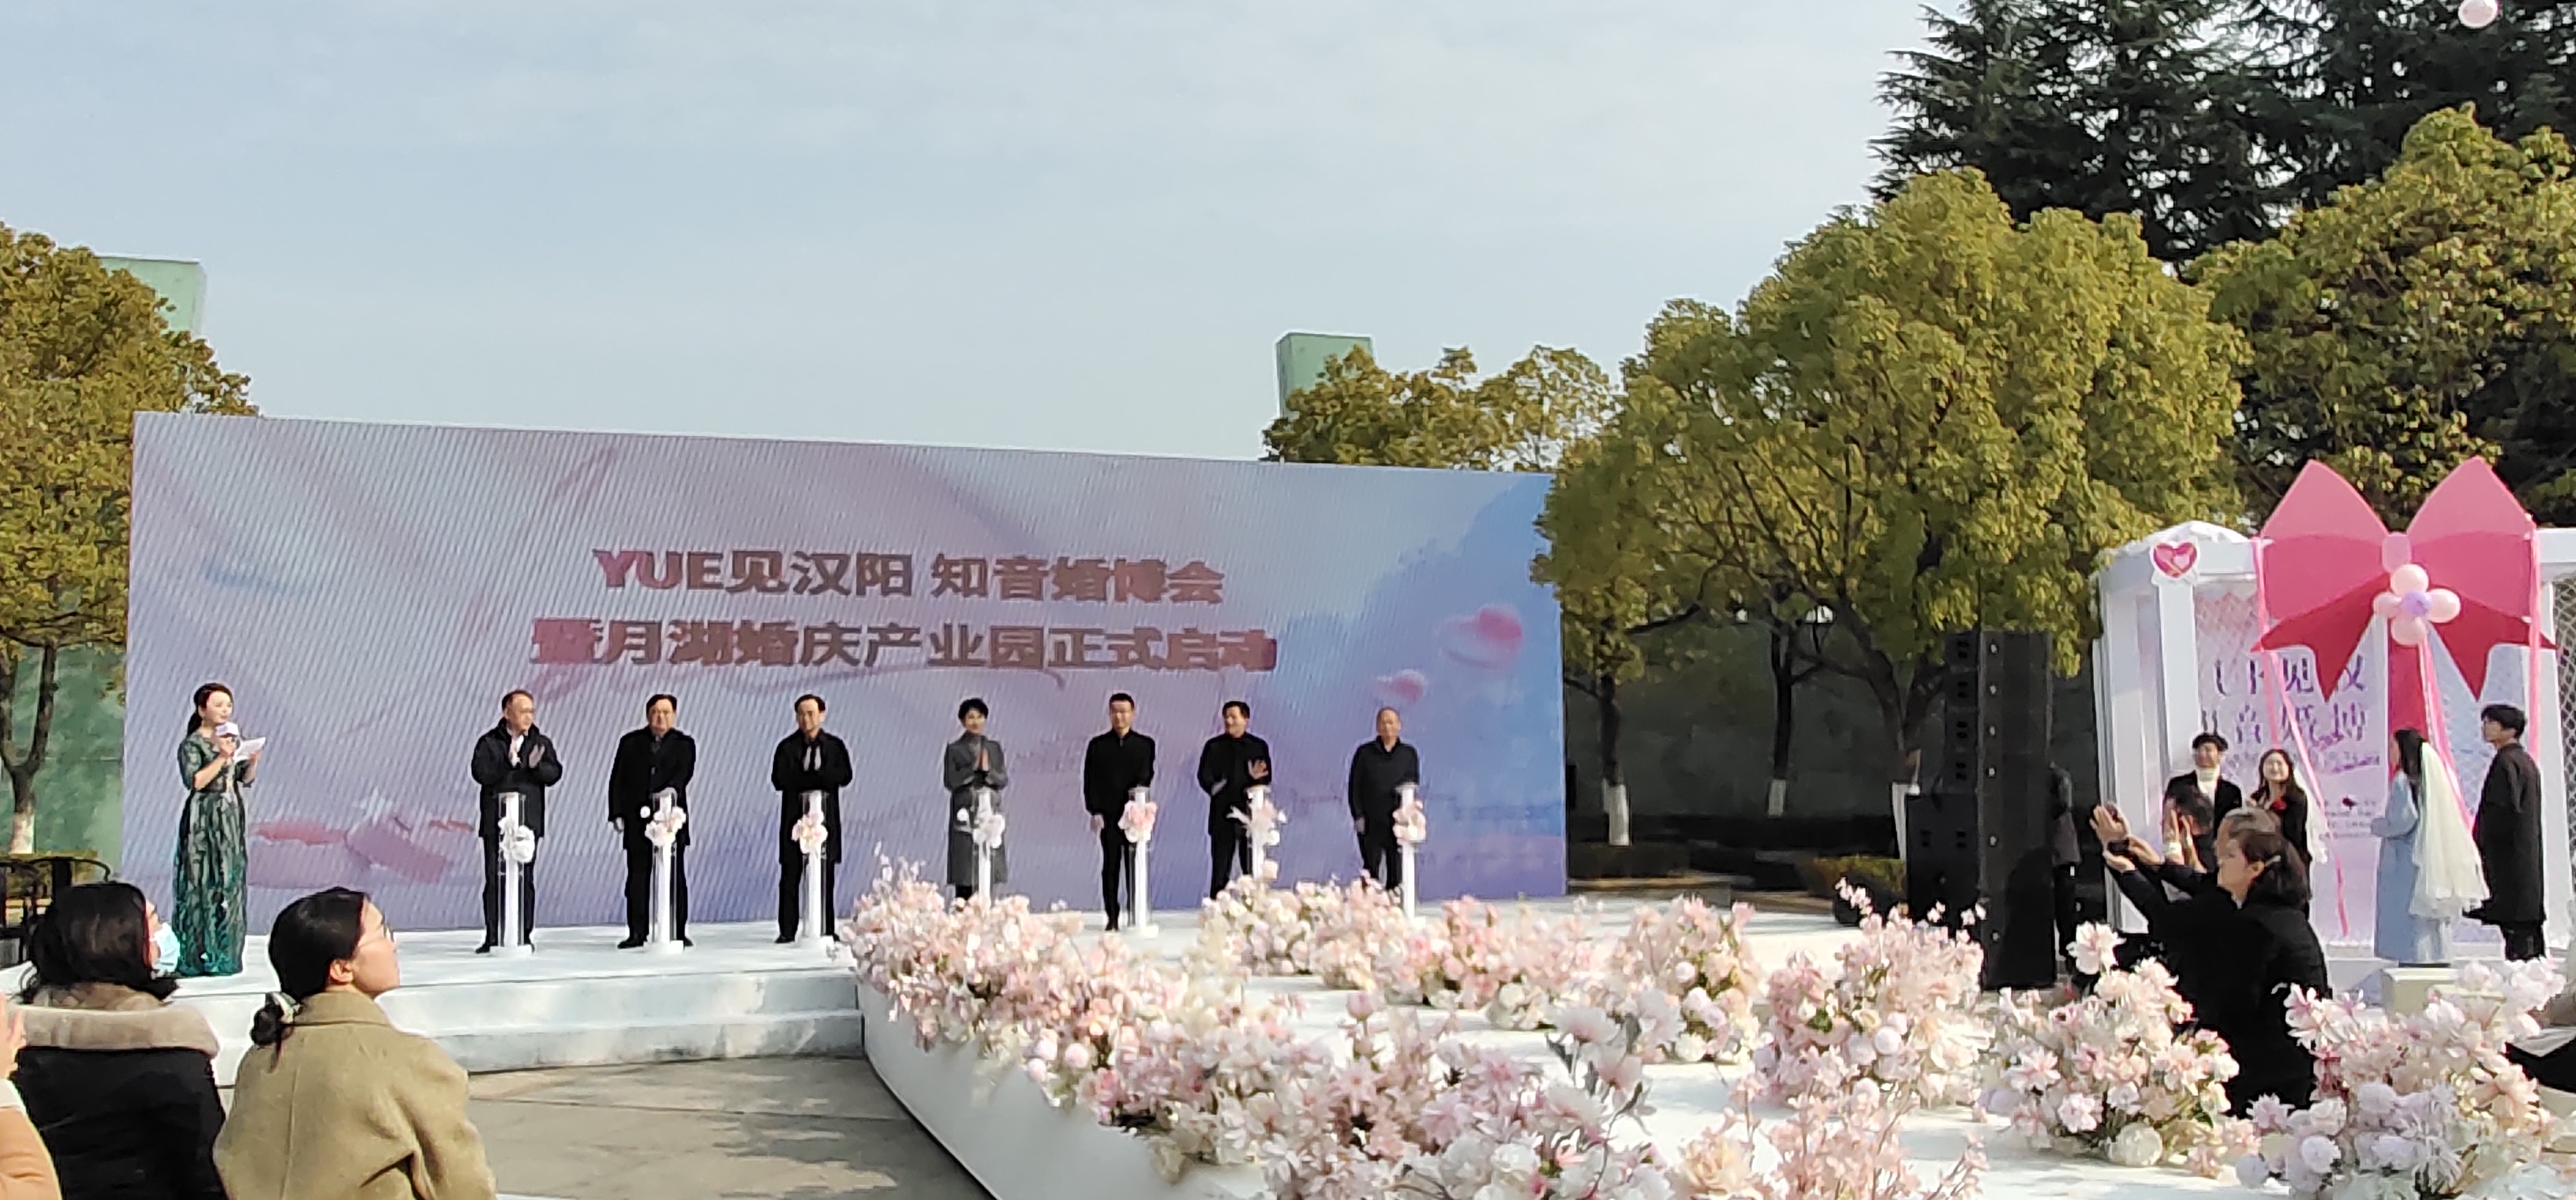 漢陽月湖婚慶產業園開啟「一站式」婚慶服務模式